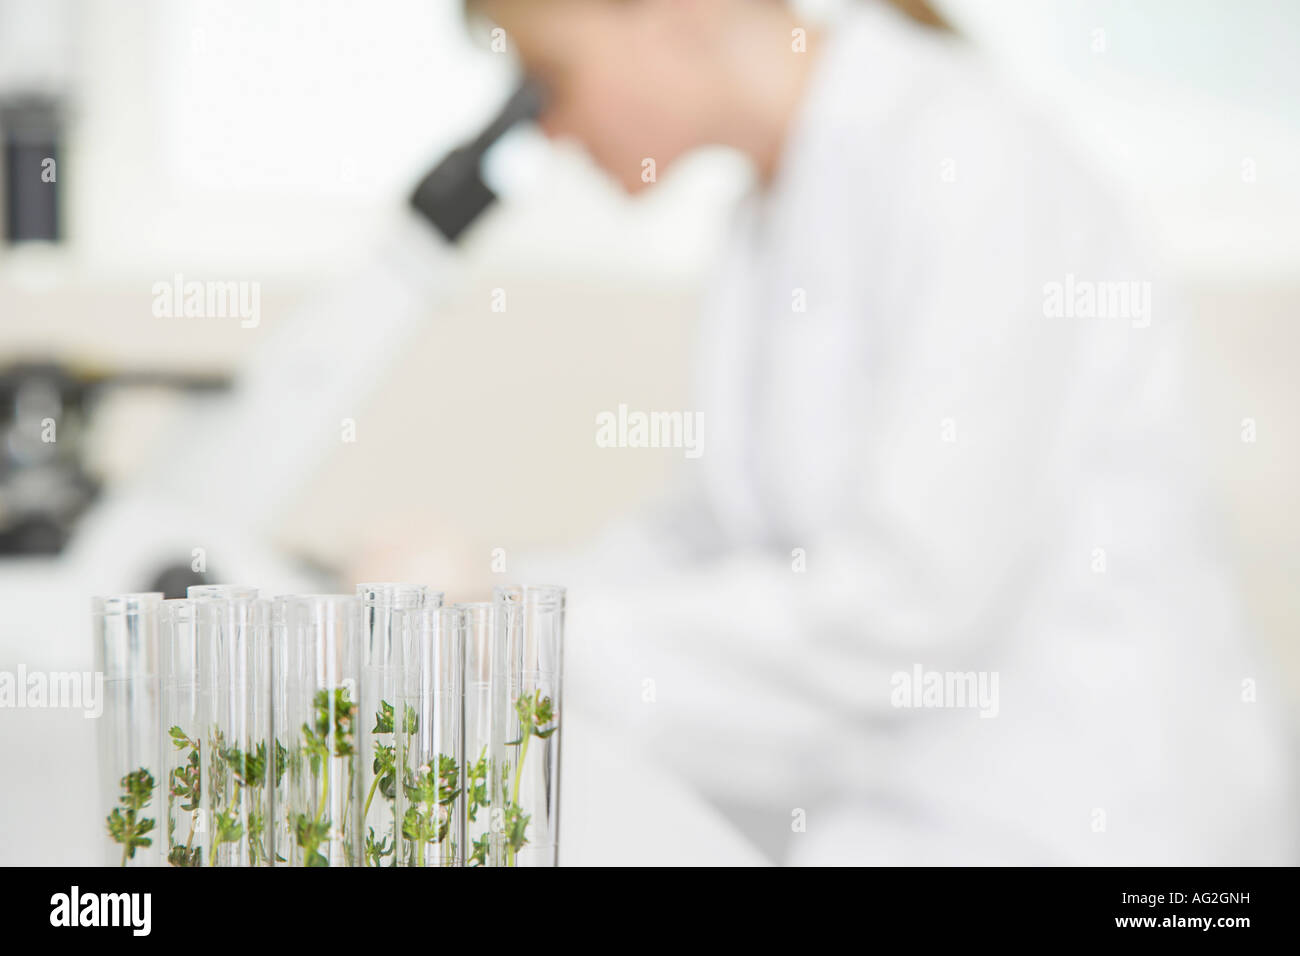 Scientist using microscope in laboratory, l'accent sur les plantes dans des tubes à essai en premier plan Banque D'Images